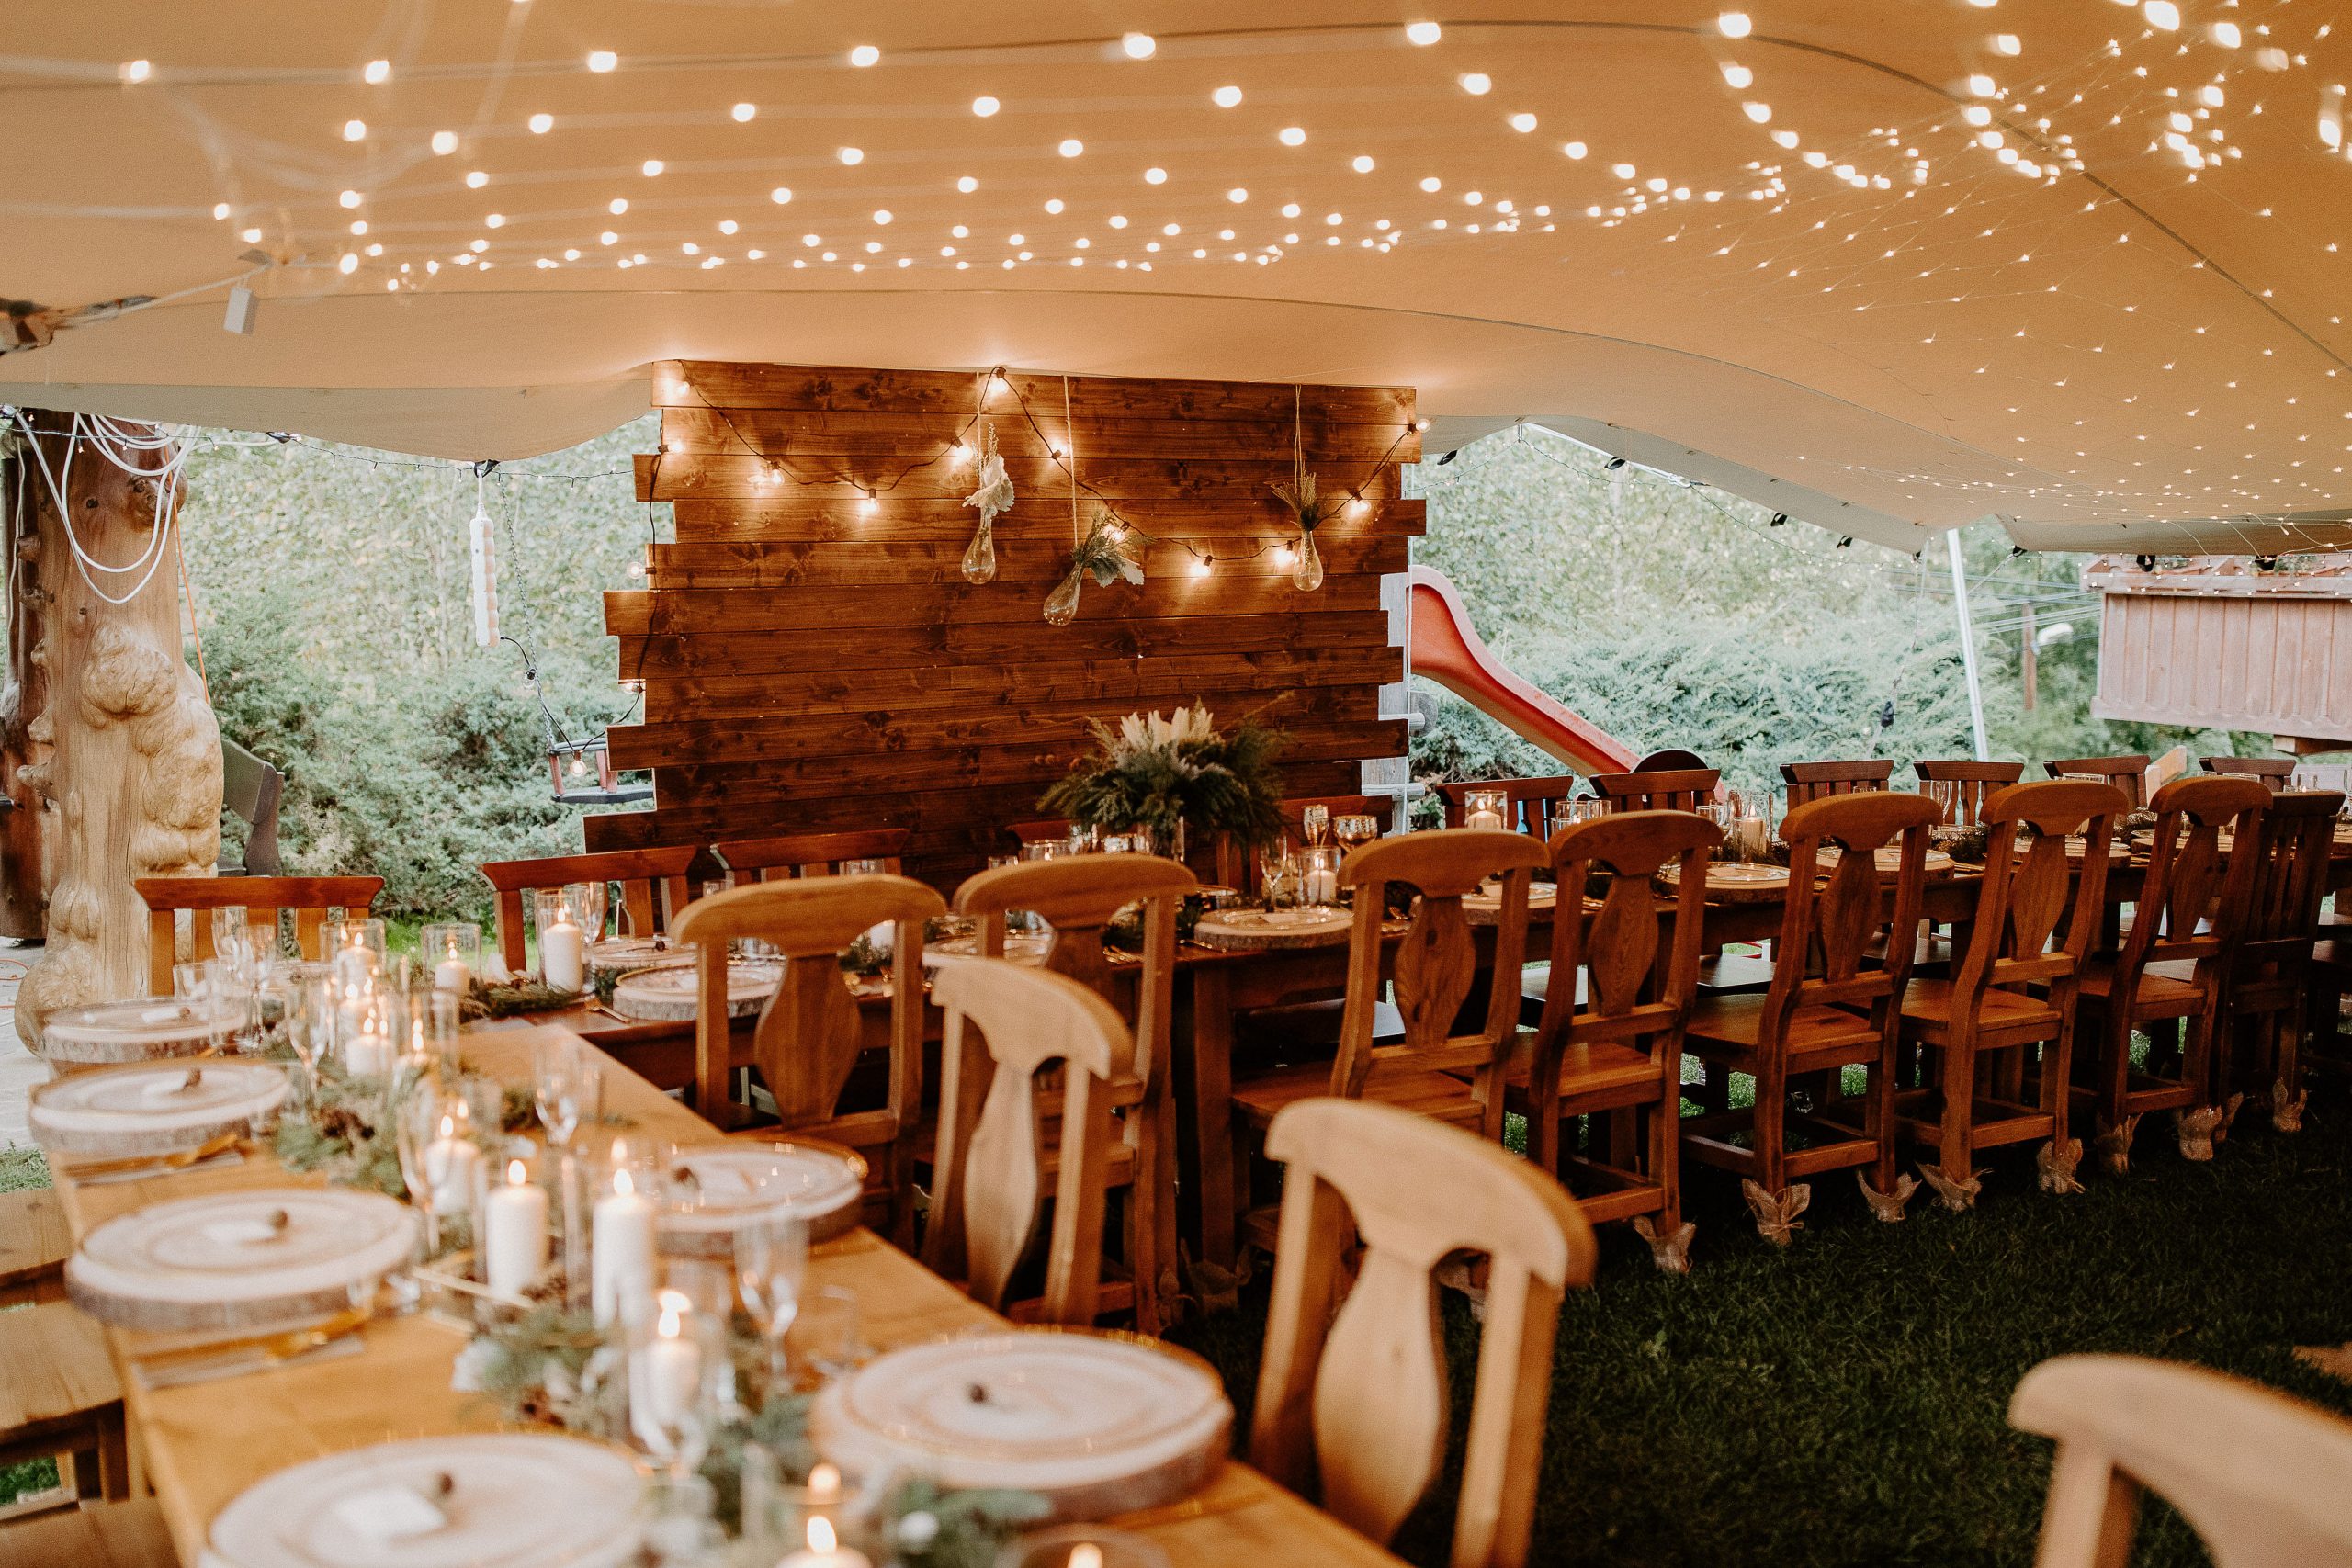 Susan&Sis decor – rozpravkova lesna svadba – blog o prirodnej svadbe – svadba MEMO photo agency – Eri a Matt – nahe prestieranie stola, ihlicie a sisky, svetelny strop